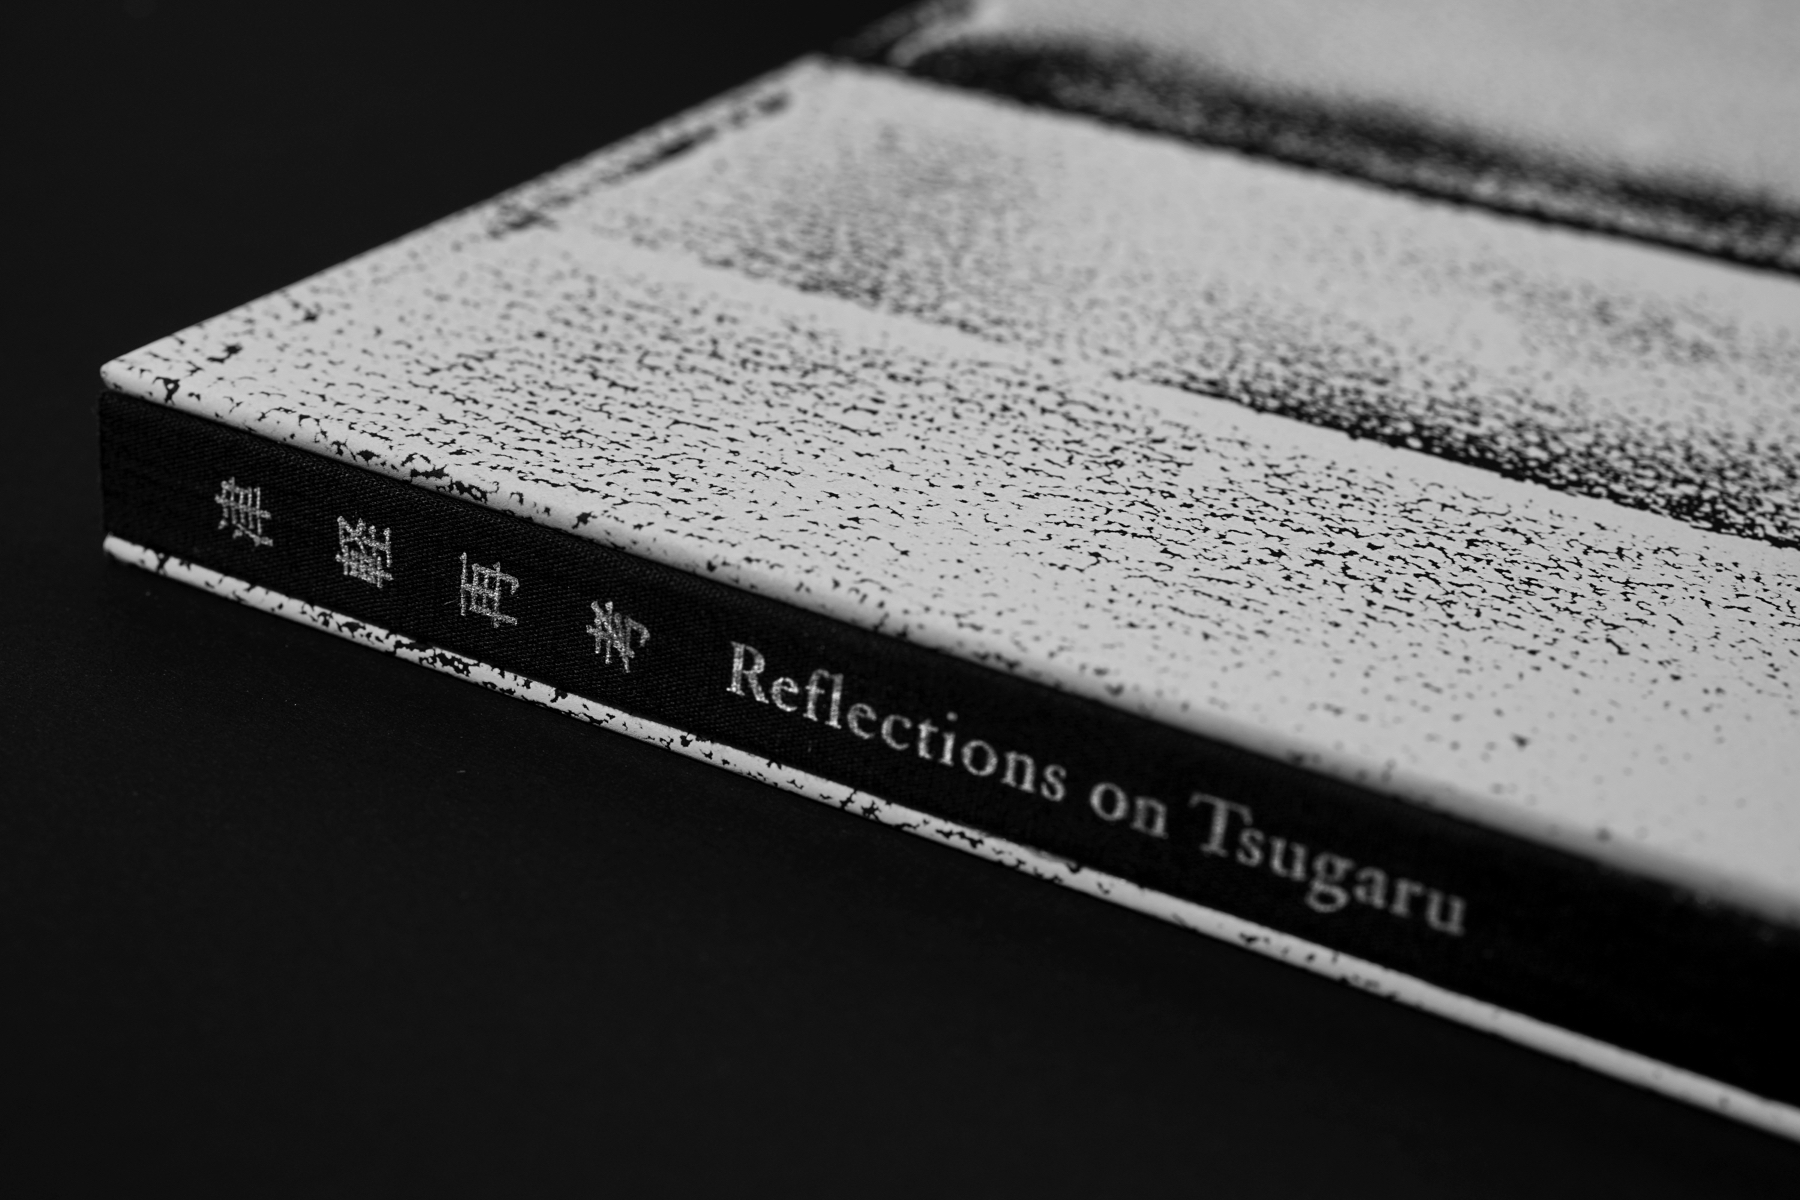 Reflections on Tsugaru | Sho Shibata